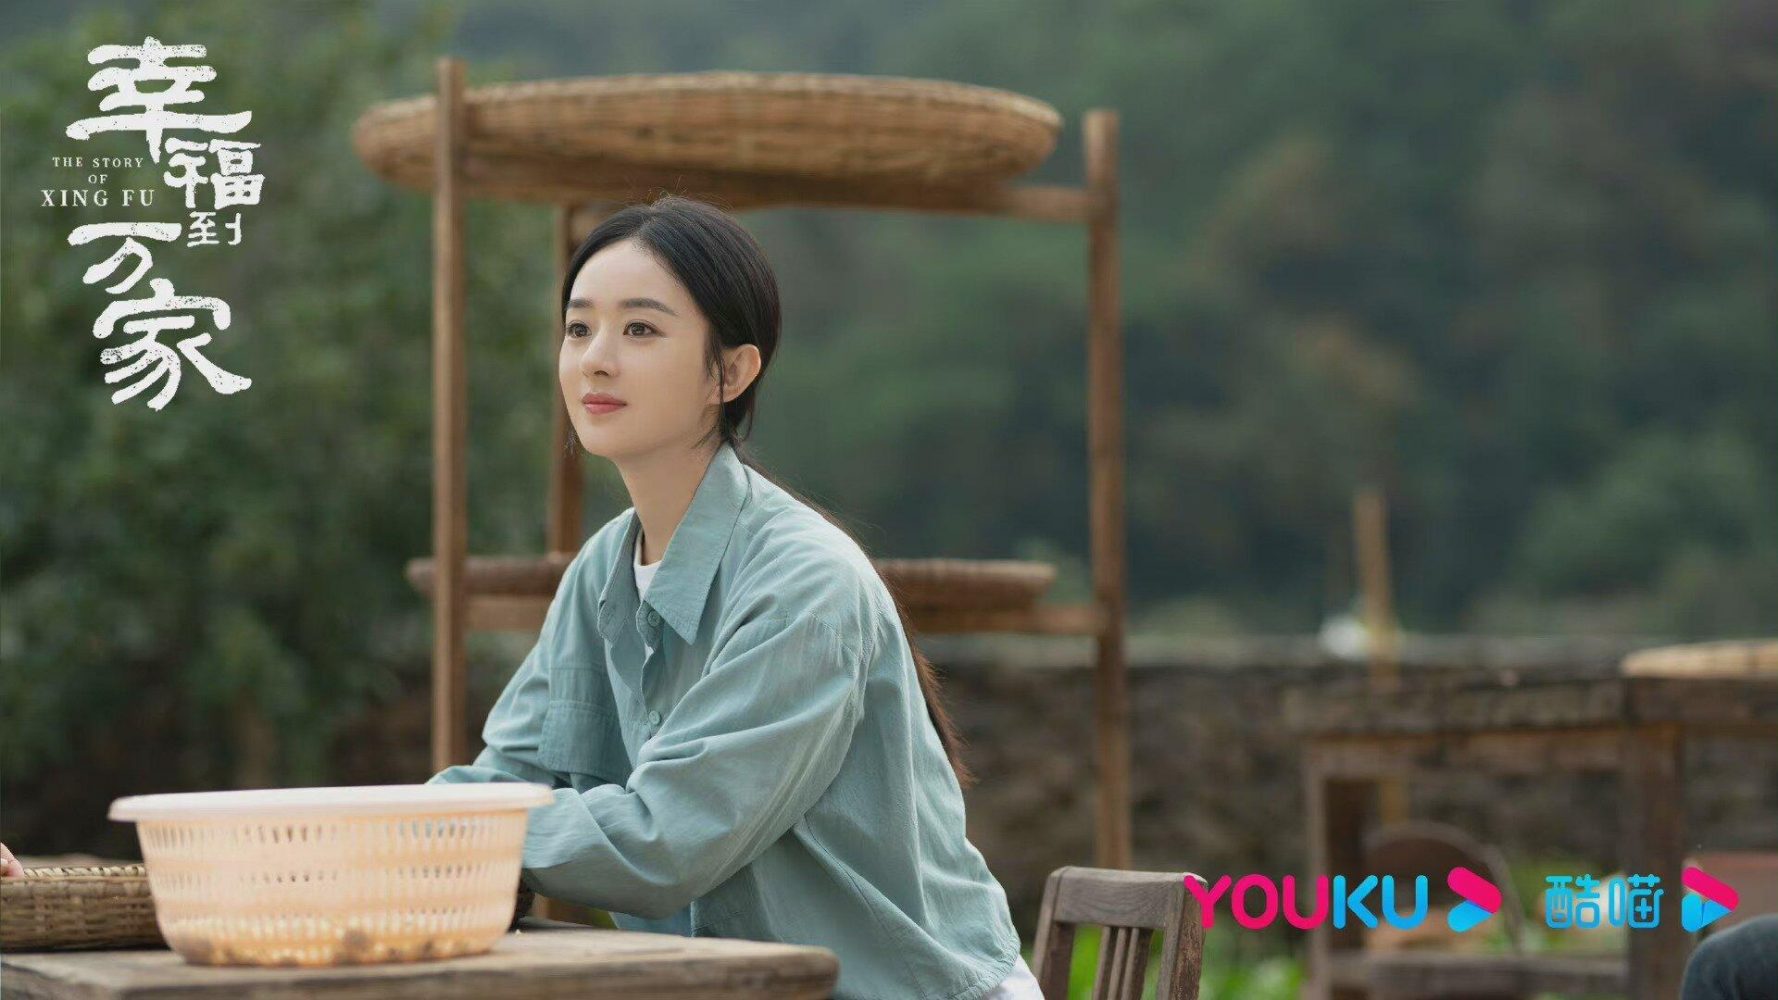 Phim mới của Triệu Lệ Dĩnh: Hạnh Phúc đến Vạn Gia - The Story Of Xing Fu (2022)